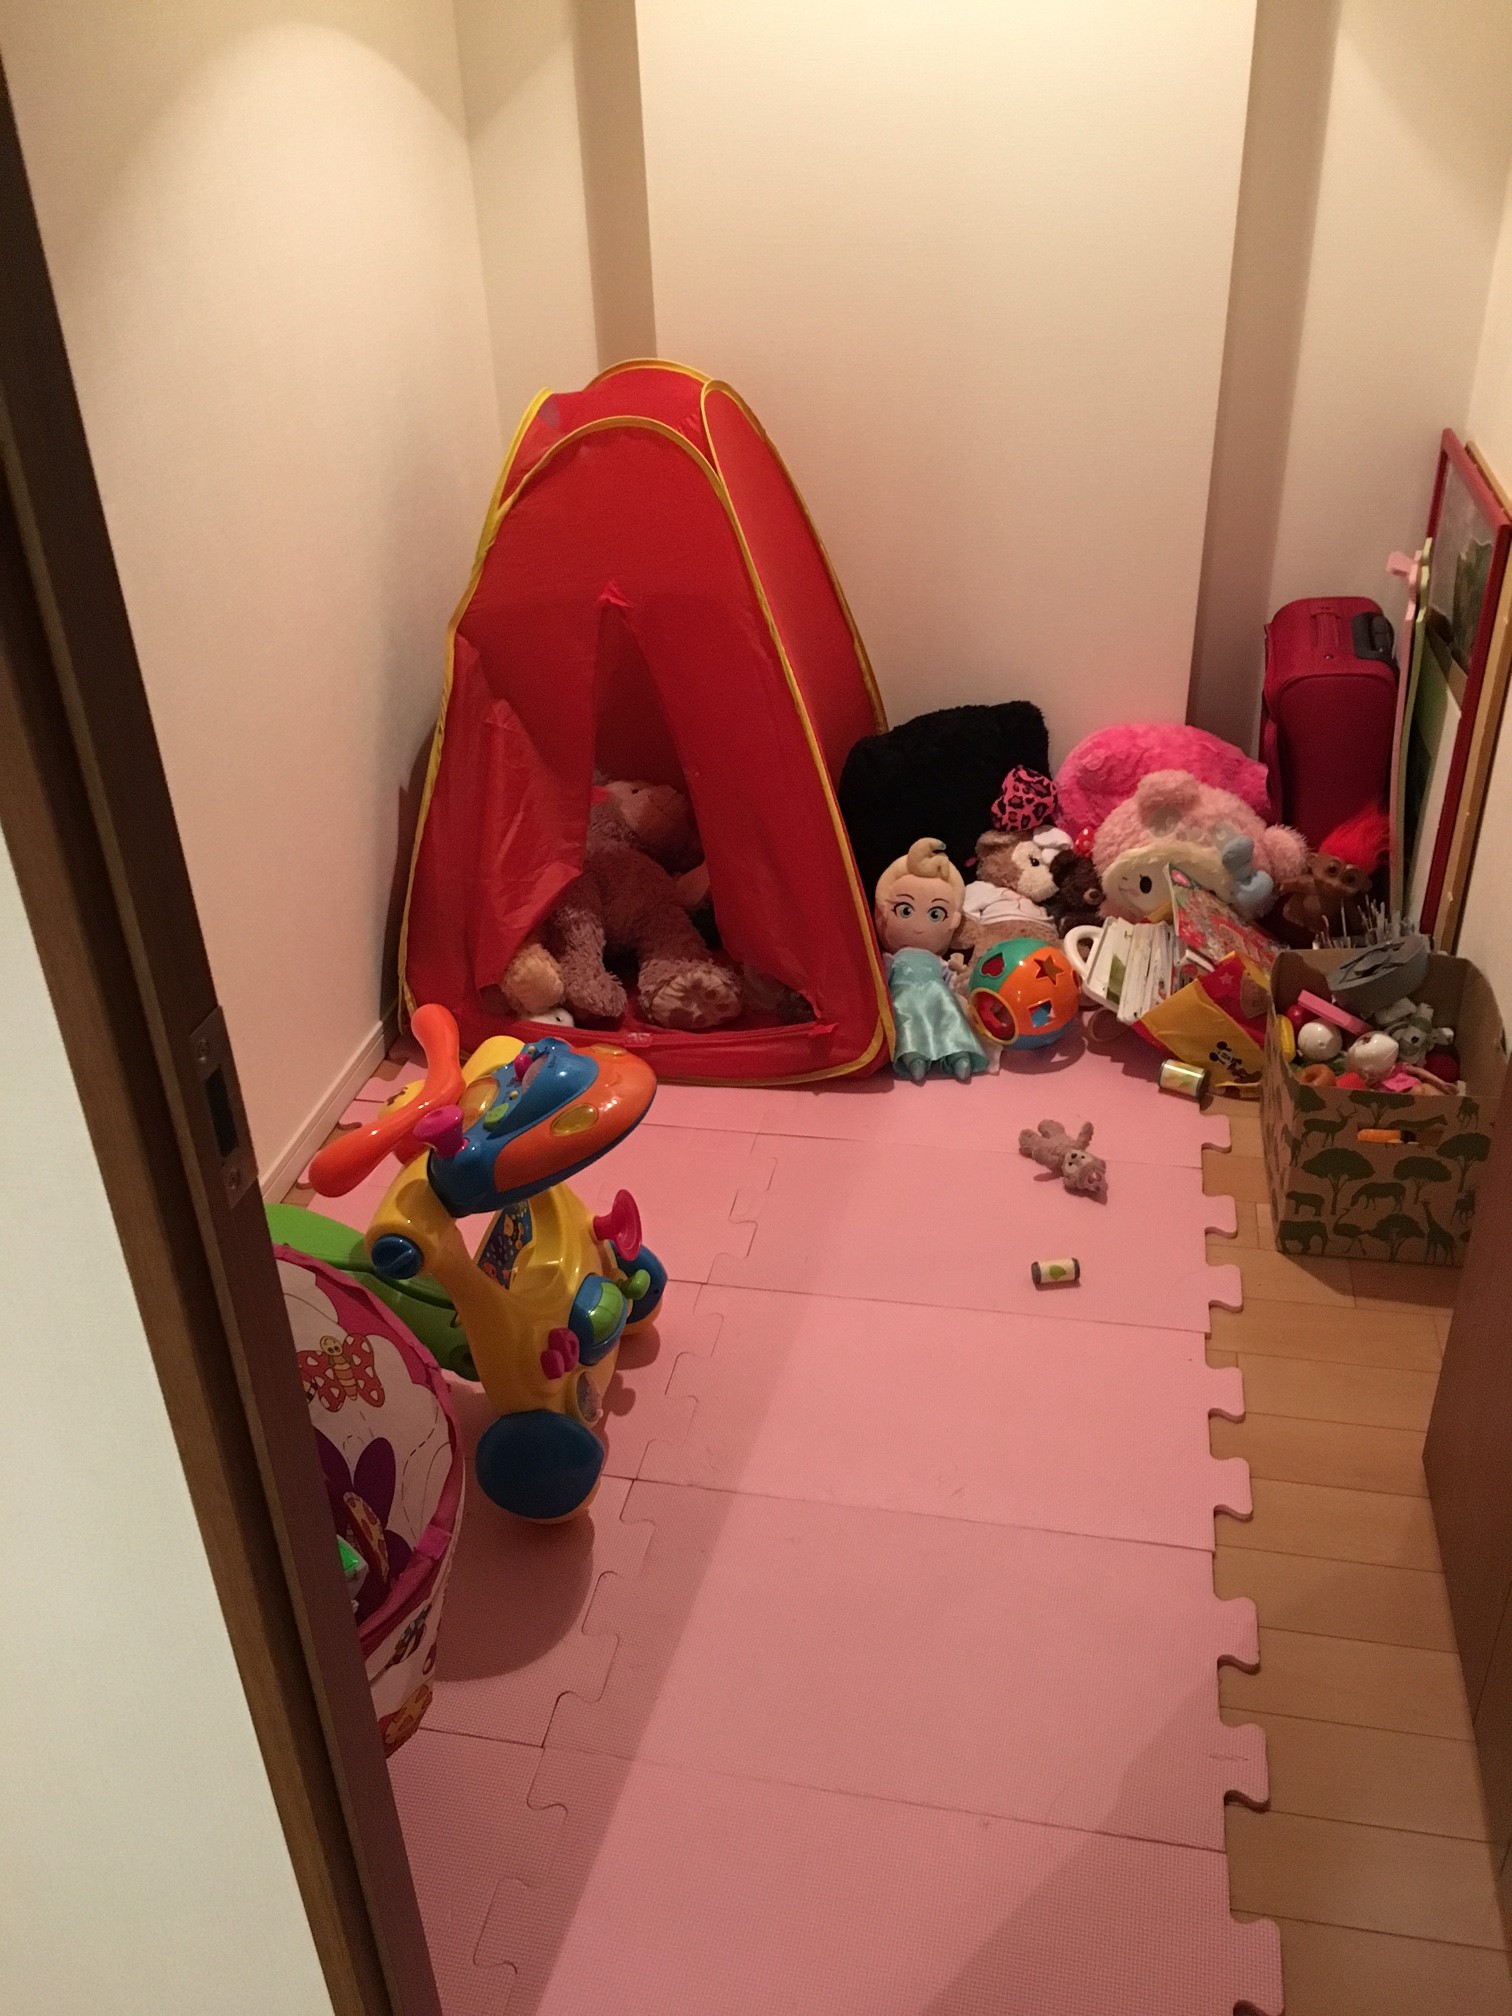 リビングダイニングに隣接する居室は子どものおもちゃ部屋に。「ドアはほとんどいつも開けたままで、子どもたちを遊ばせています」